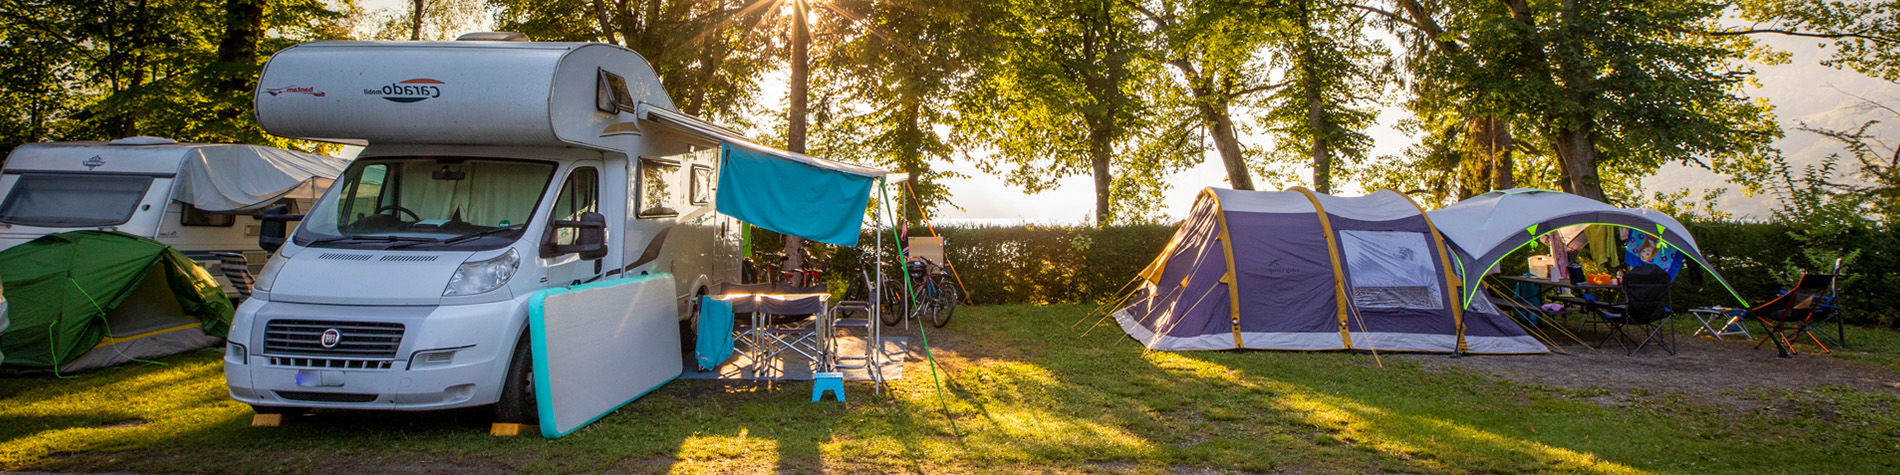 Camping-Zubehör zu reduzierten Preisen - TCS Schweiz